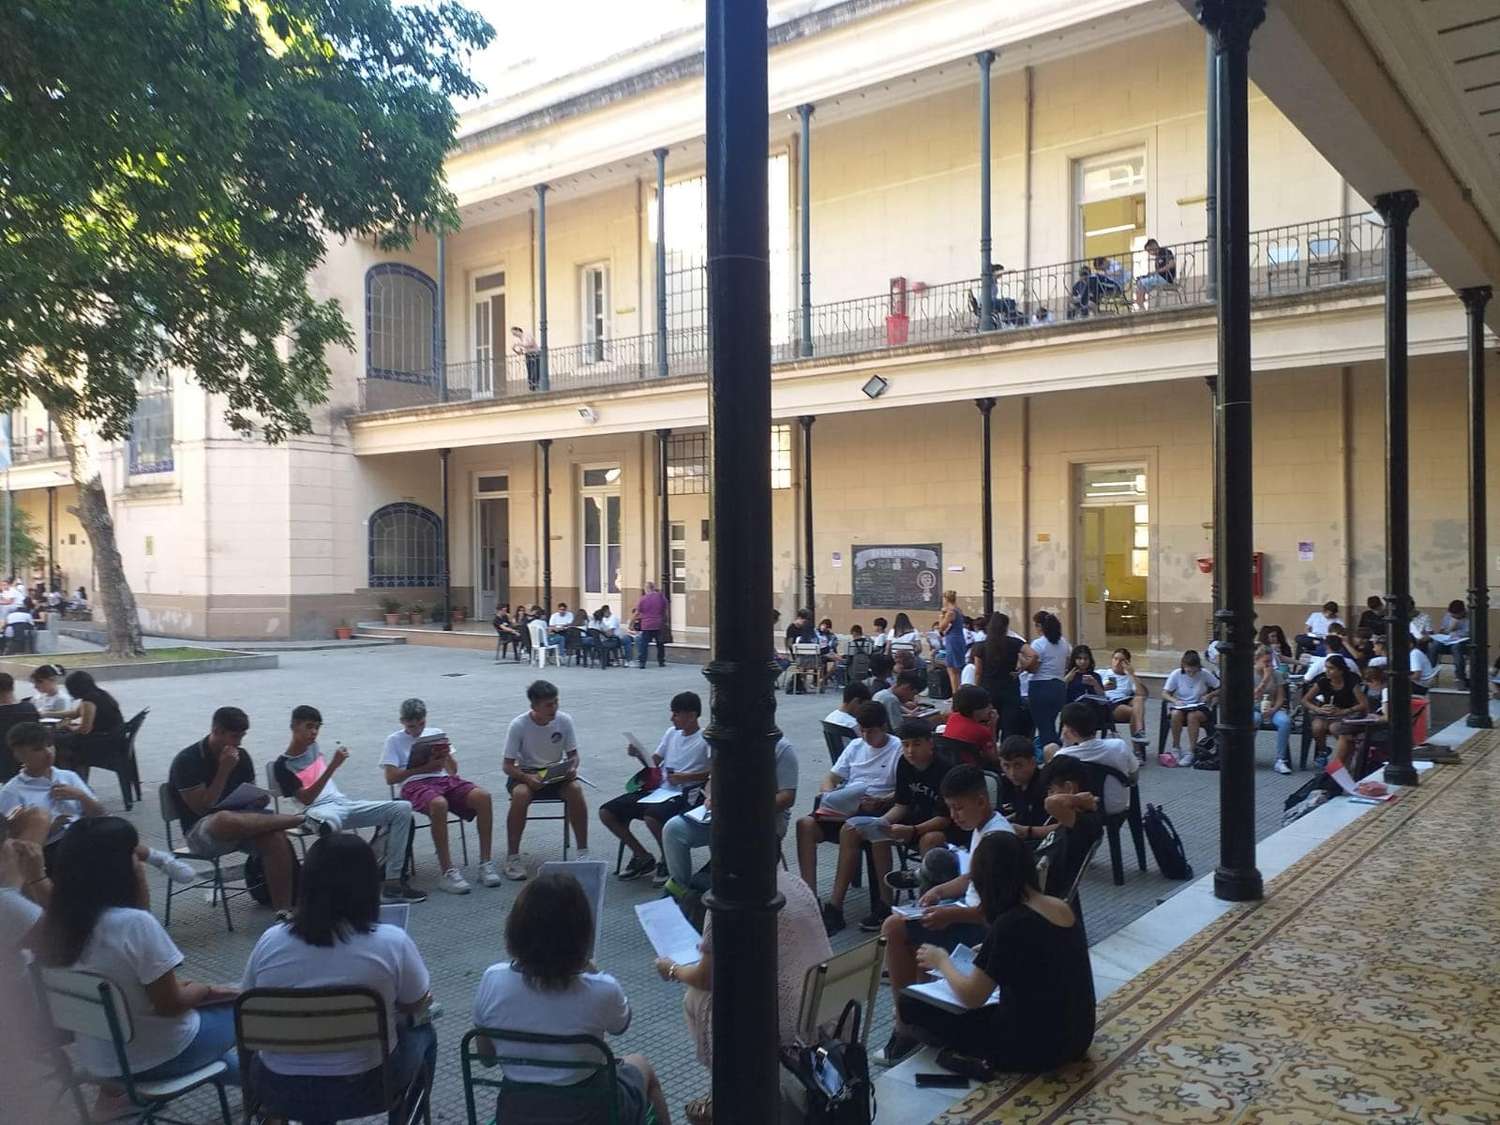 Docentes del Colegio Nacional de Paraná decidieron dar clases en el patio debido al calor